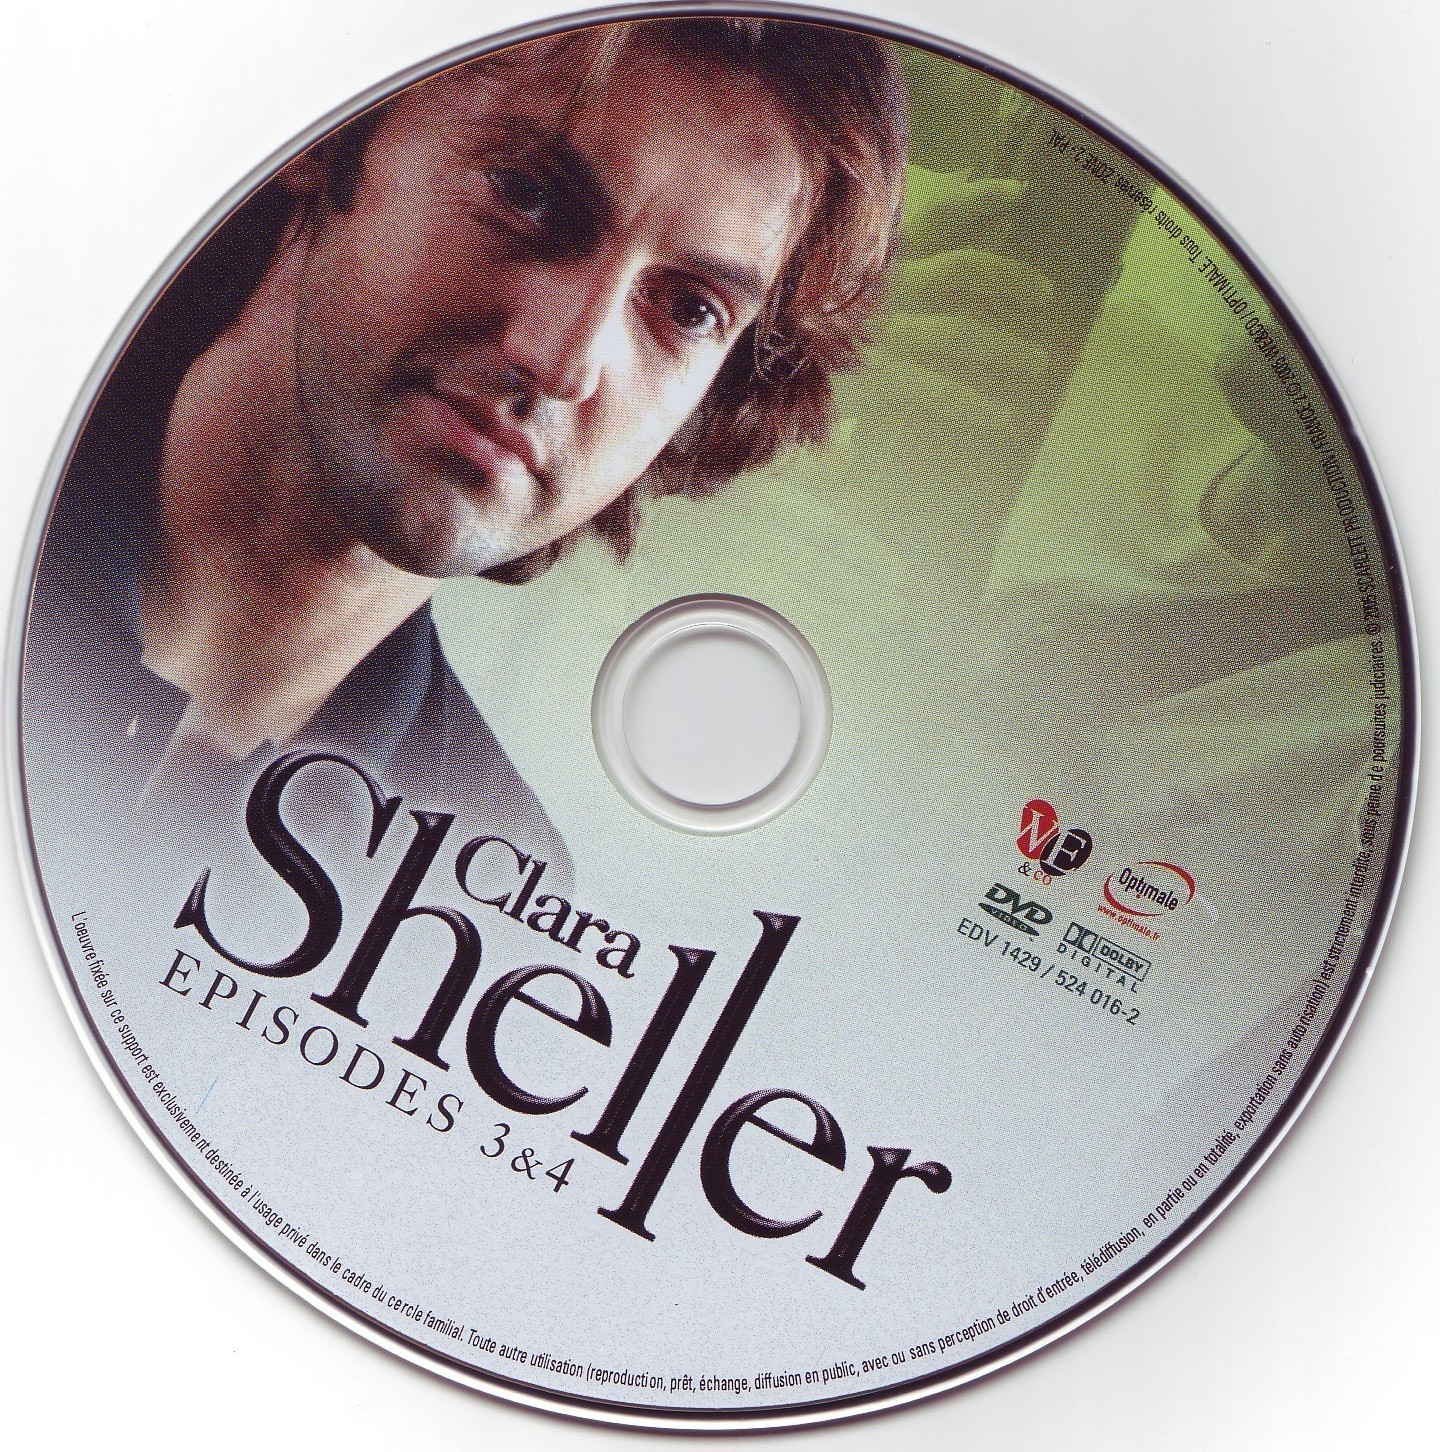 Clara Sheller dvd 2